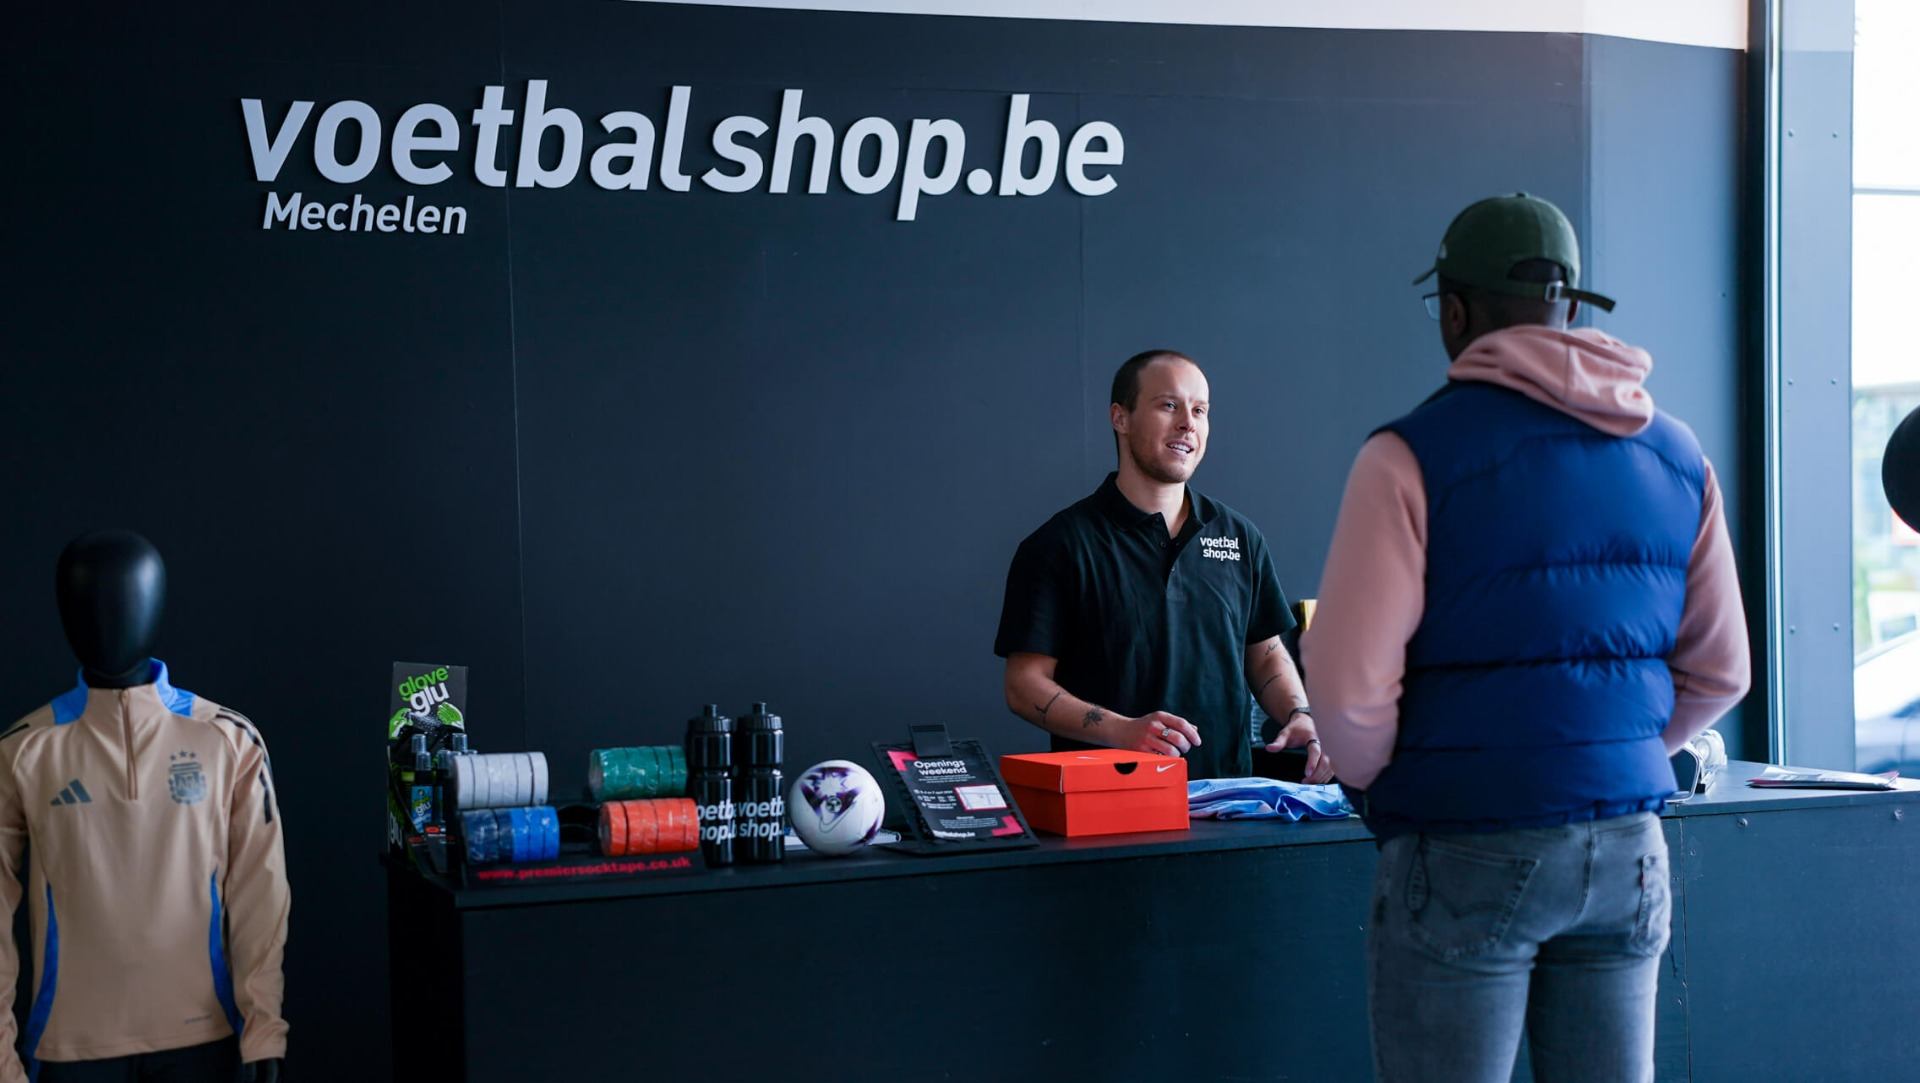 Voetbalshop.be opent nieuwe winkel in Mechelen